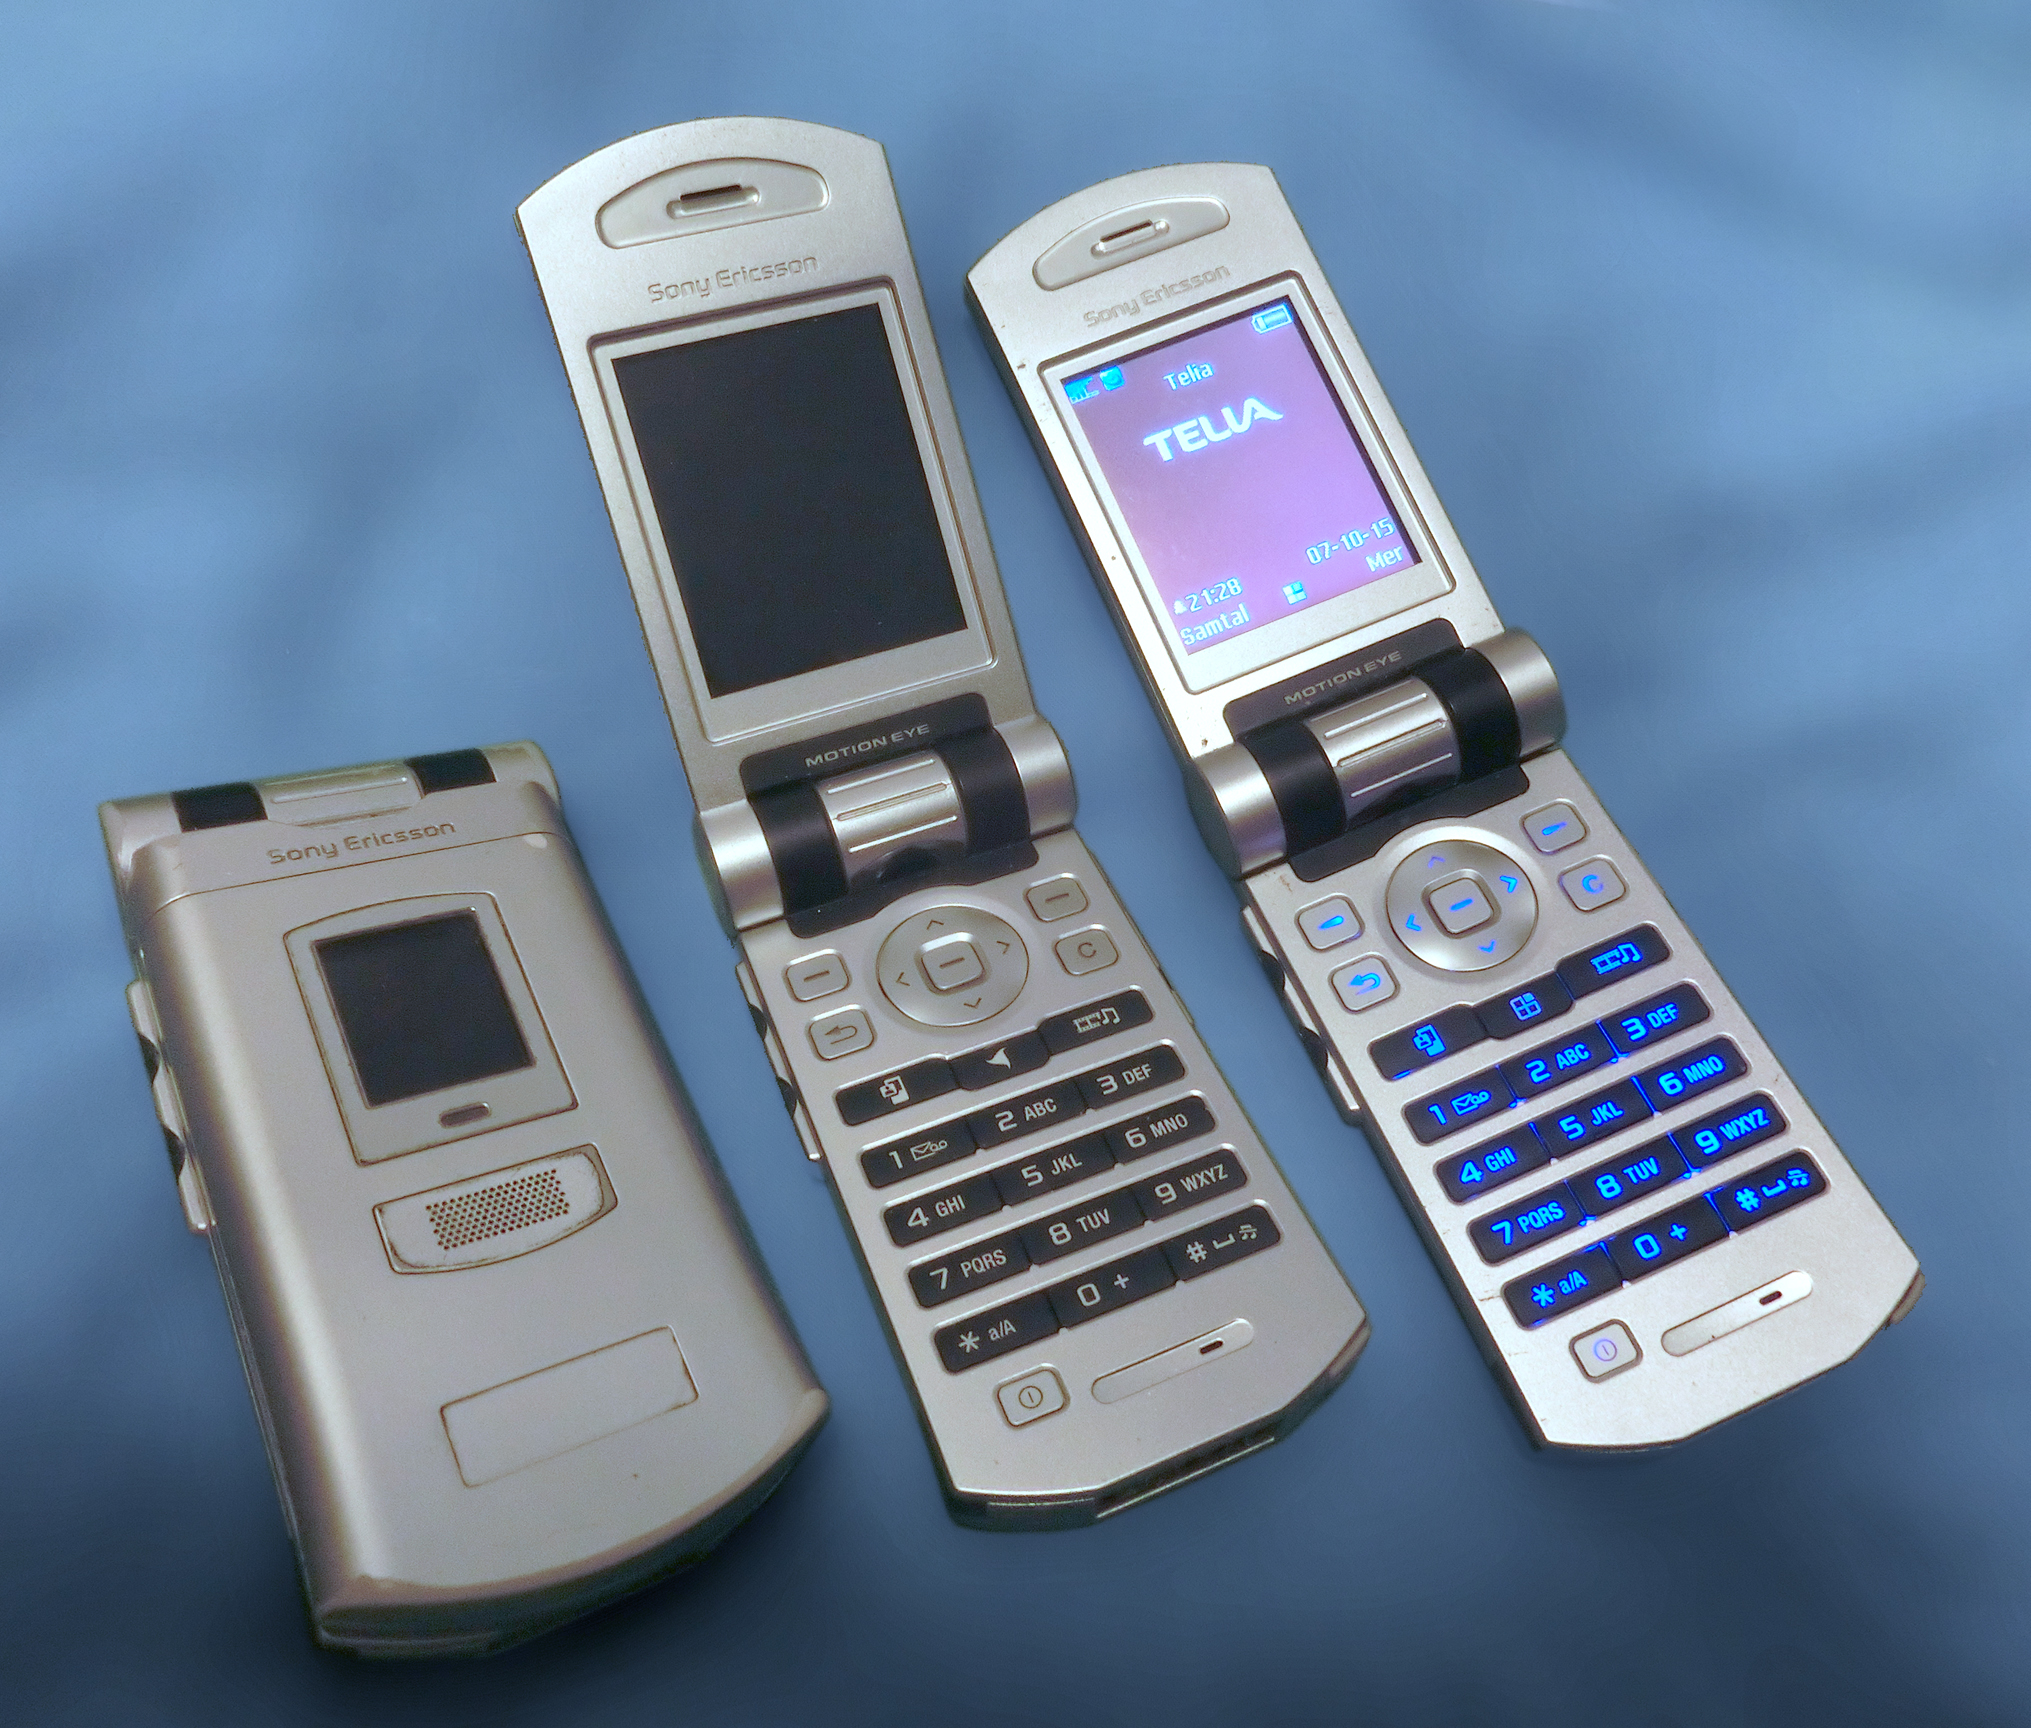 Sony Ericsson z800